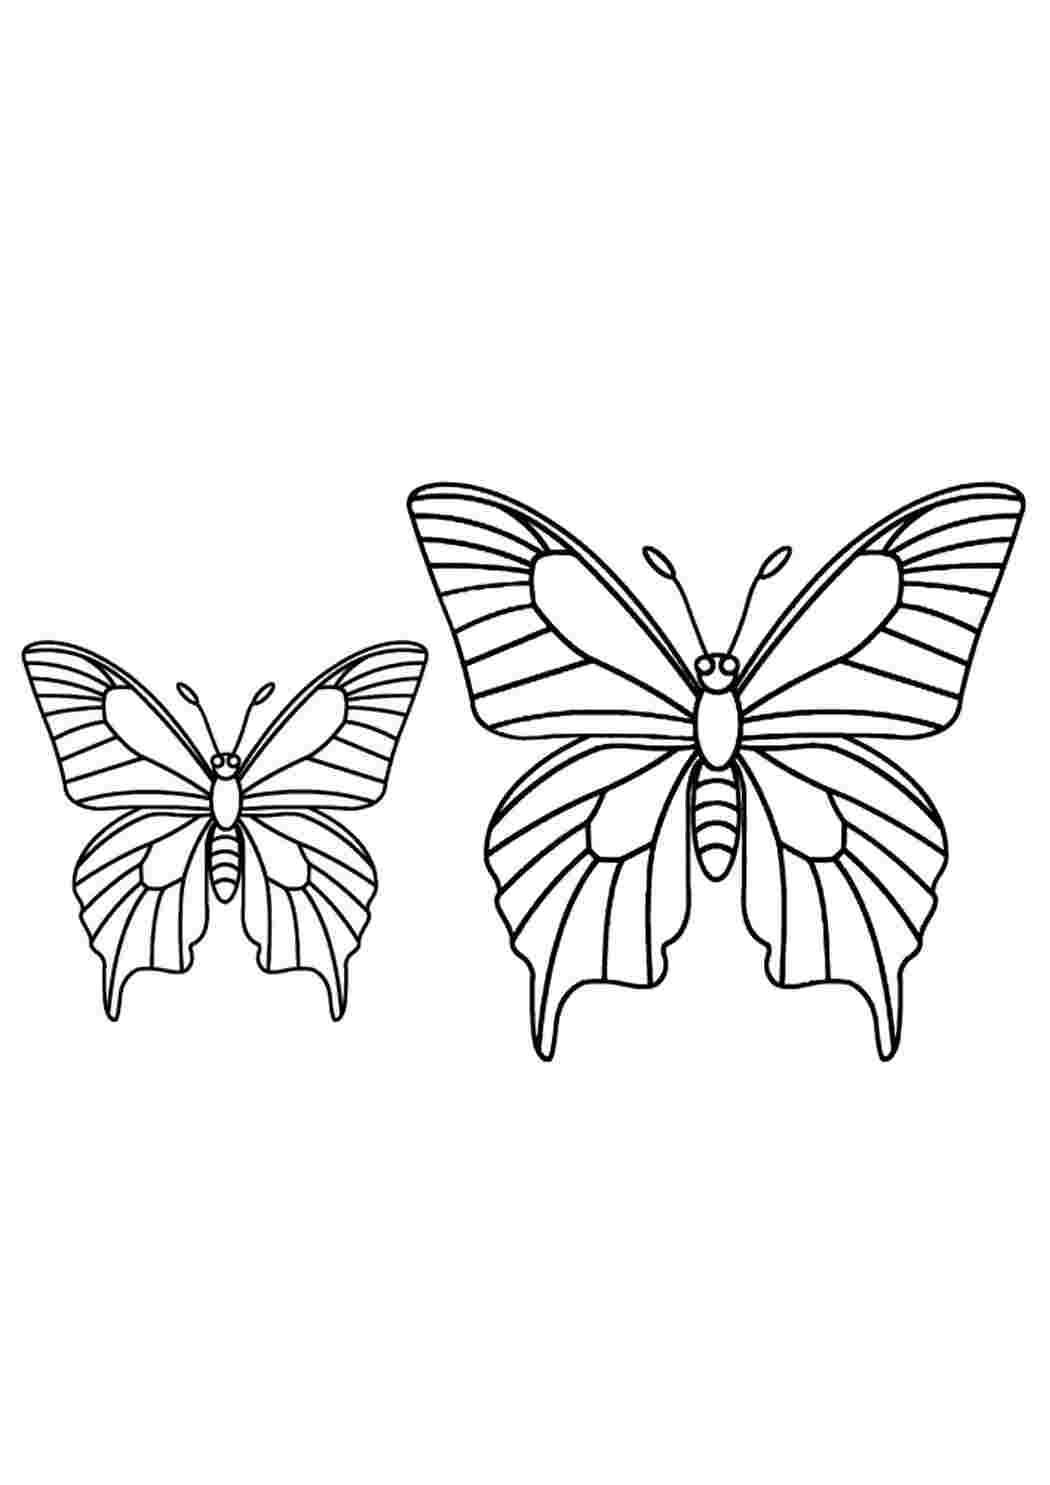 Раскраска 2 бабочки. Бабочка раскраска для детей. Бабочка черно белая раскраска. Раскраска бабочка для самых маленьких. Раскраски бабочки красивые.